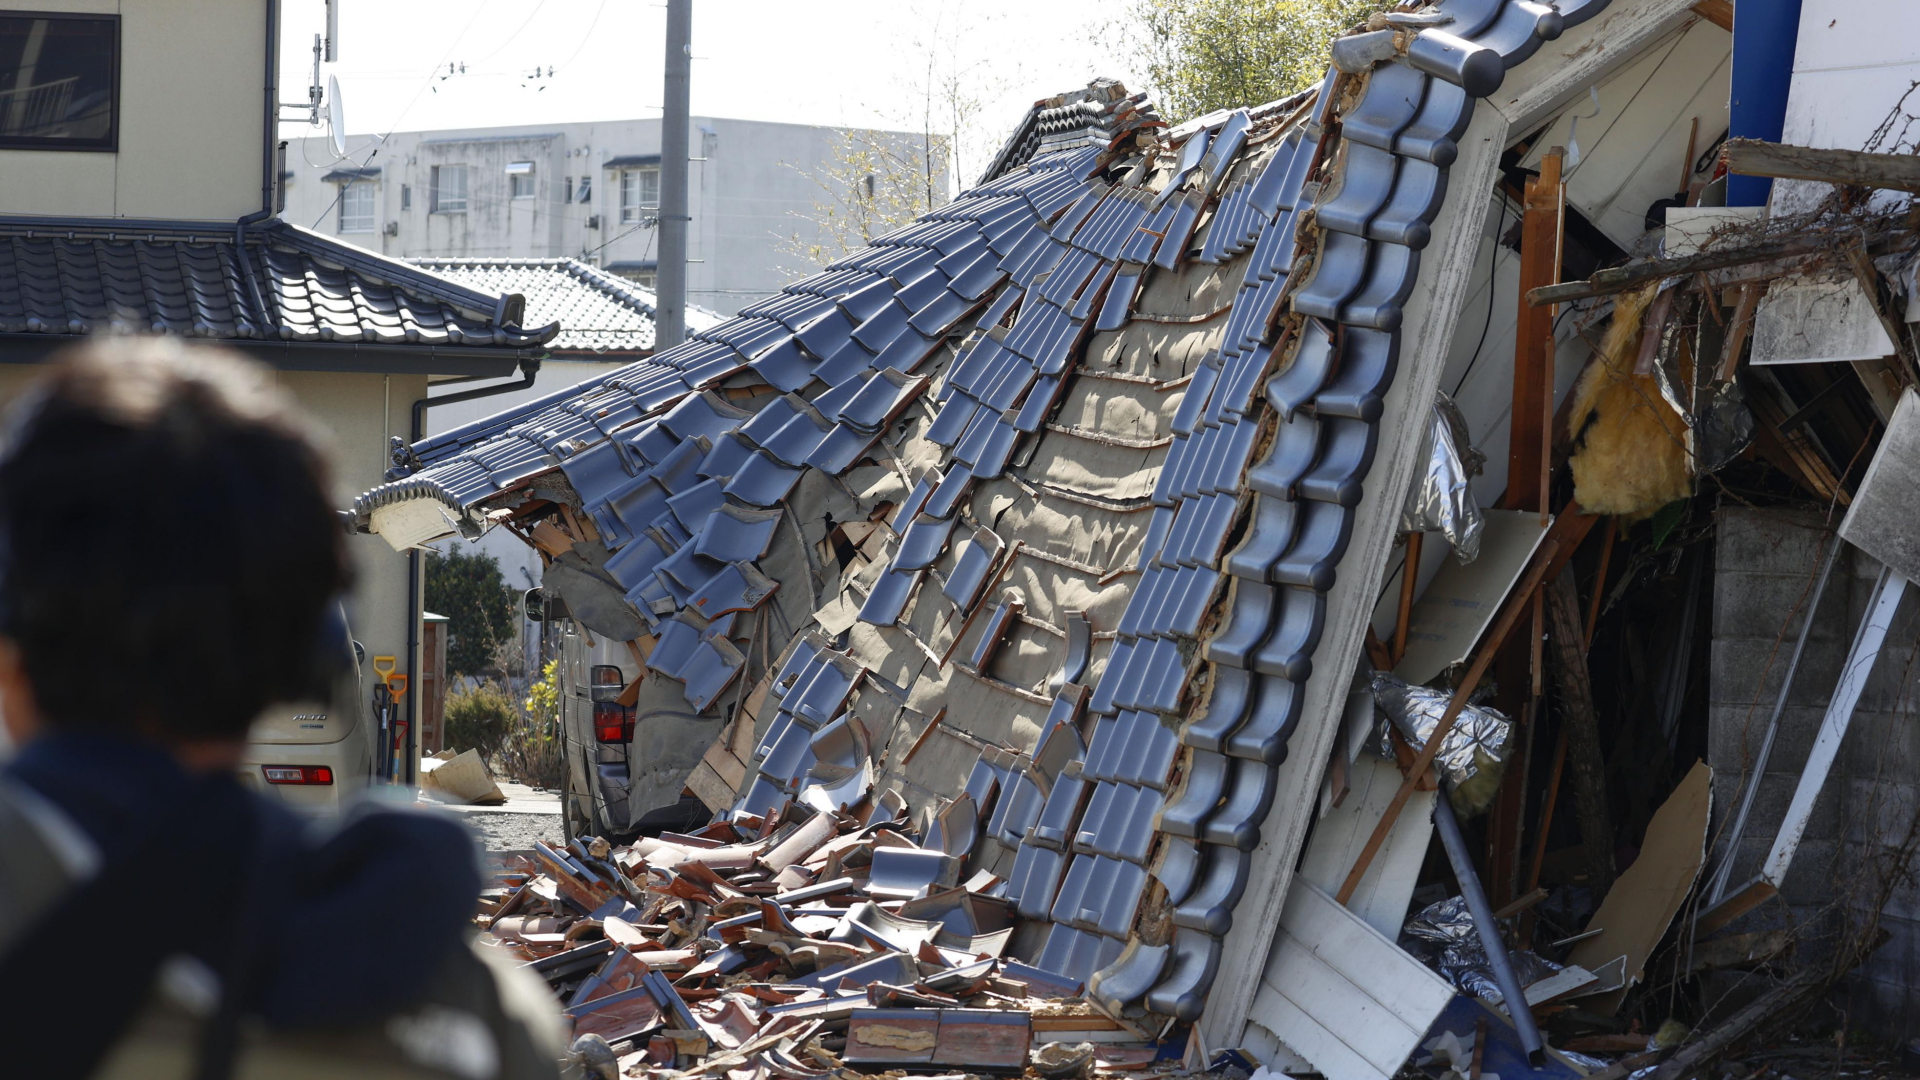 Wilayah Fukushima: Setidaknya empat orang tewas setelah gempa di Jepang